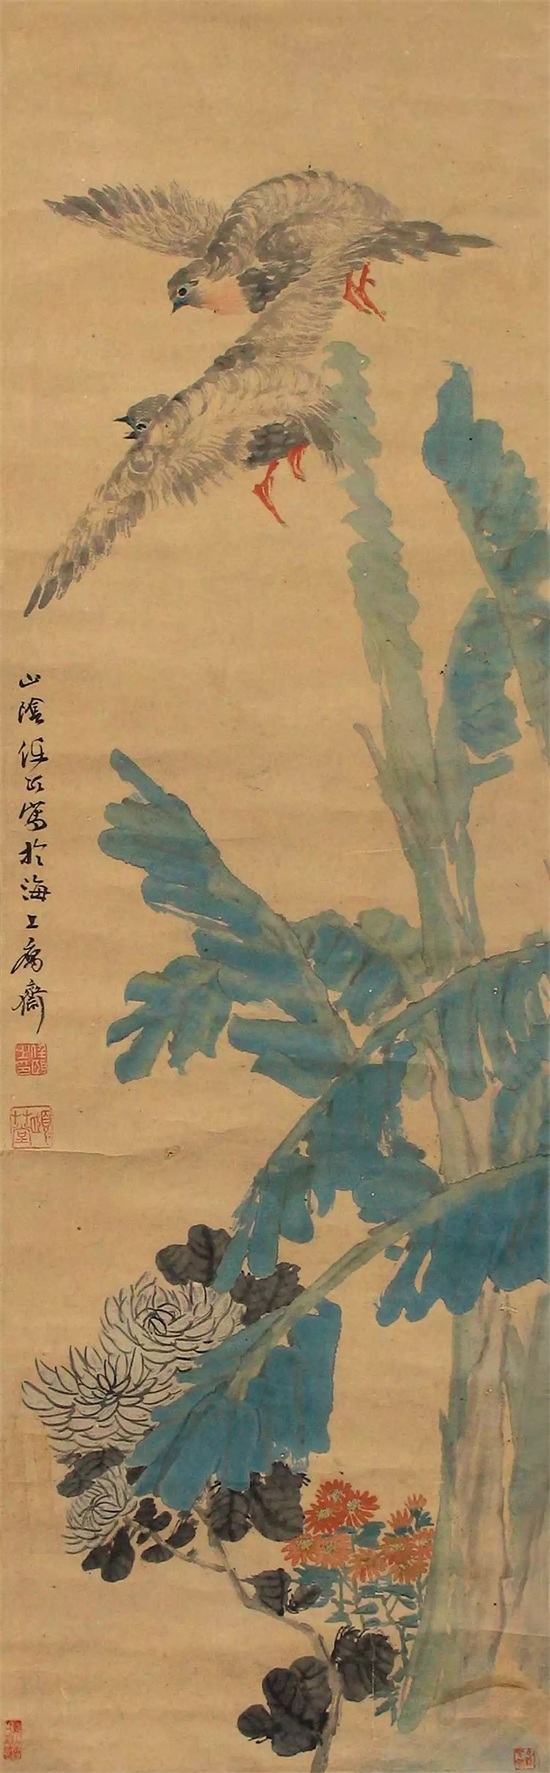 王雪涛: 任伯年是一个很独特的画家